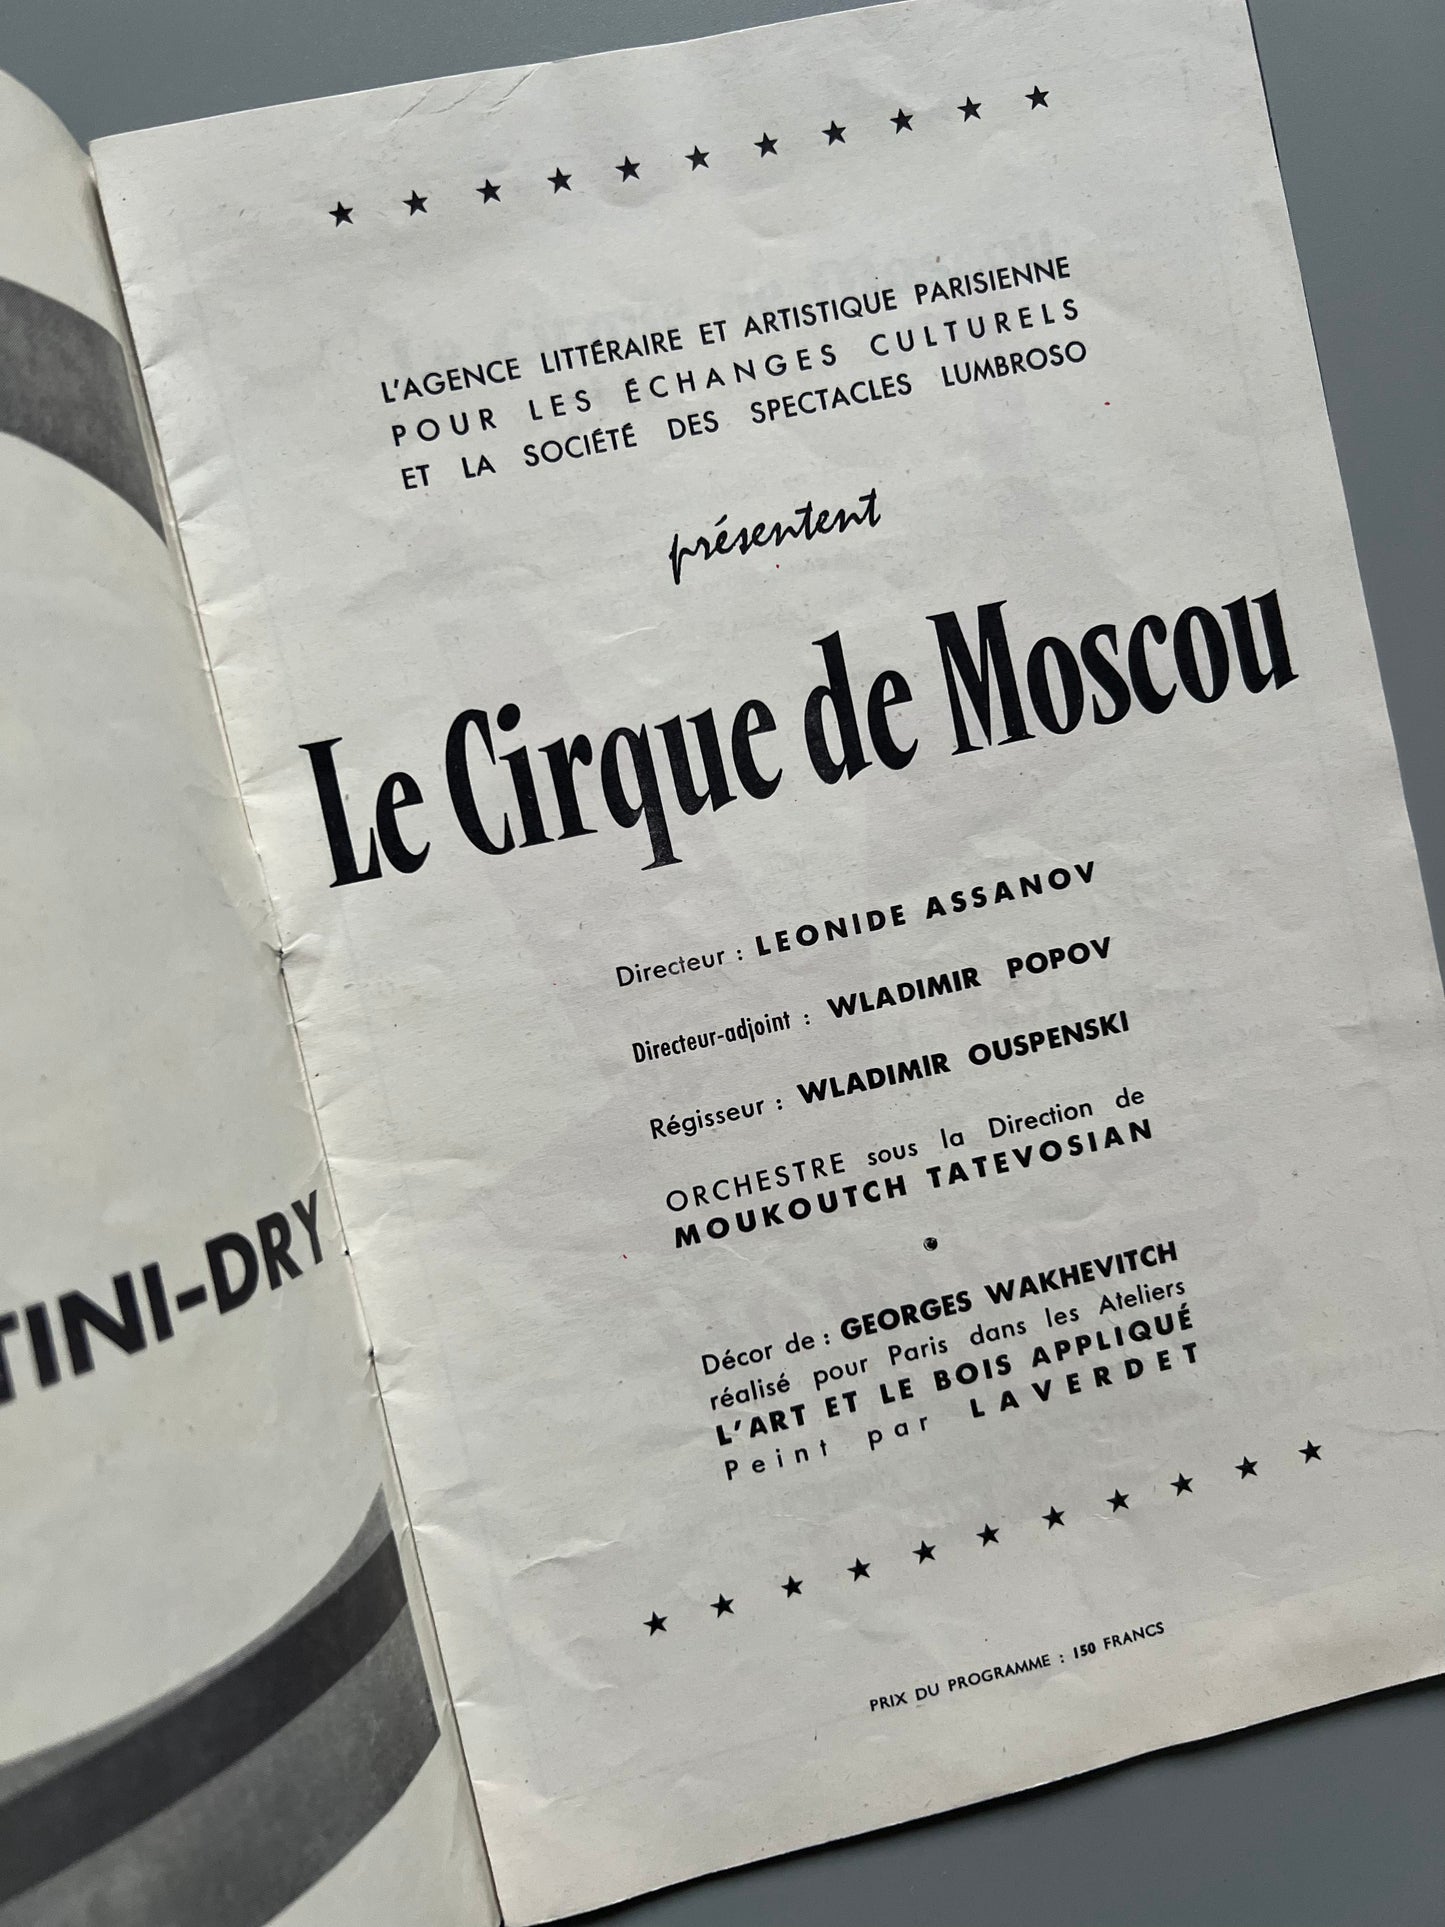 Programa del Circo de Moscou, Le Cirque d'etat de Moscou - 1958